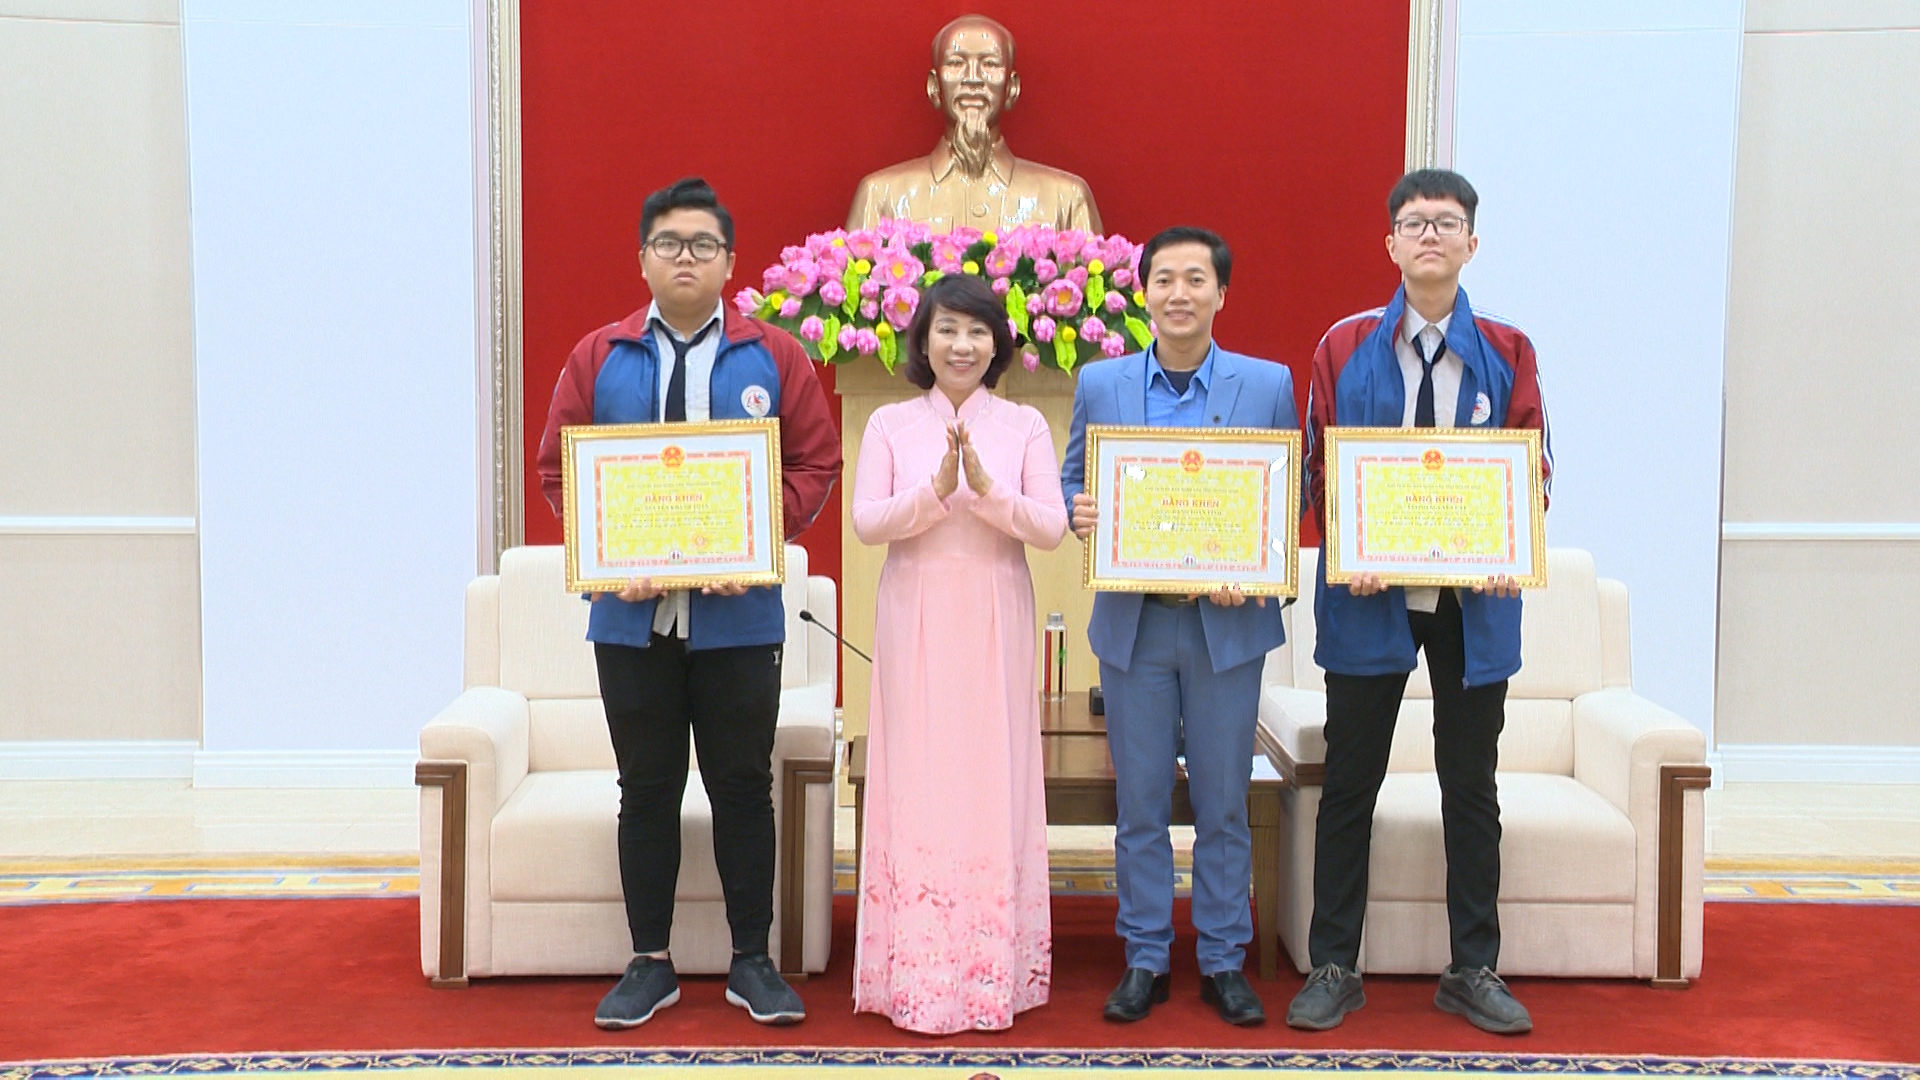 Đồng chí Vũ Thị Thu Thủy, Phó Chủ tịch UBND tỉnh, trao bằng khen của UBND tỉnh cho giáo viên, học sinh đoạt HCB Cuộc thi Phát minh sáng chế quốc tế INOVA.